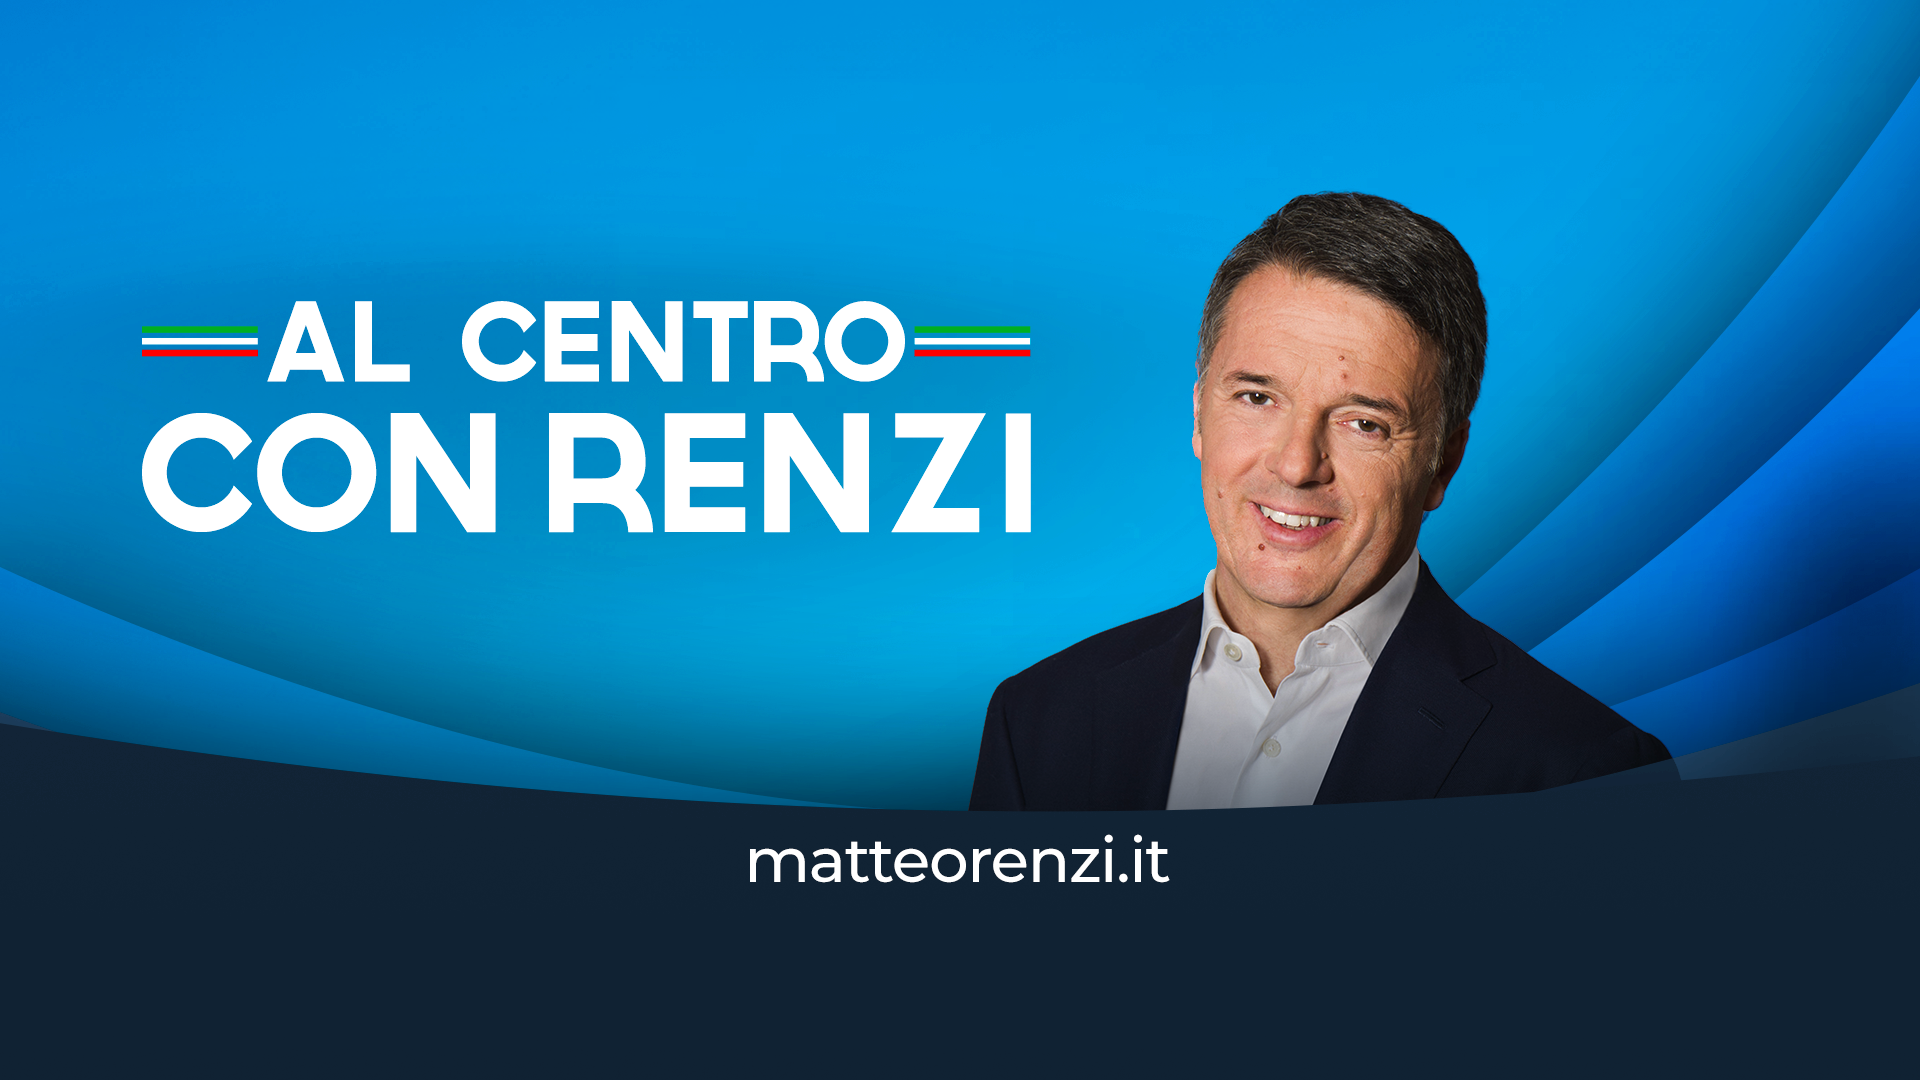 Elezioni Europee, Matteo Renzi: "Sarà un viaggio in tutte le province, partendo da quella irpina"